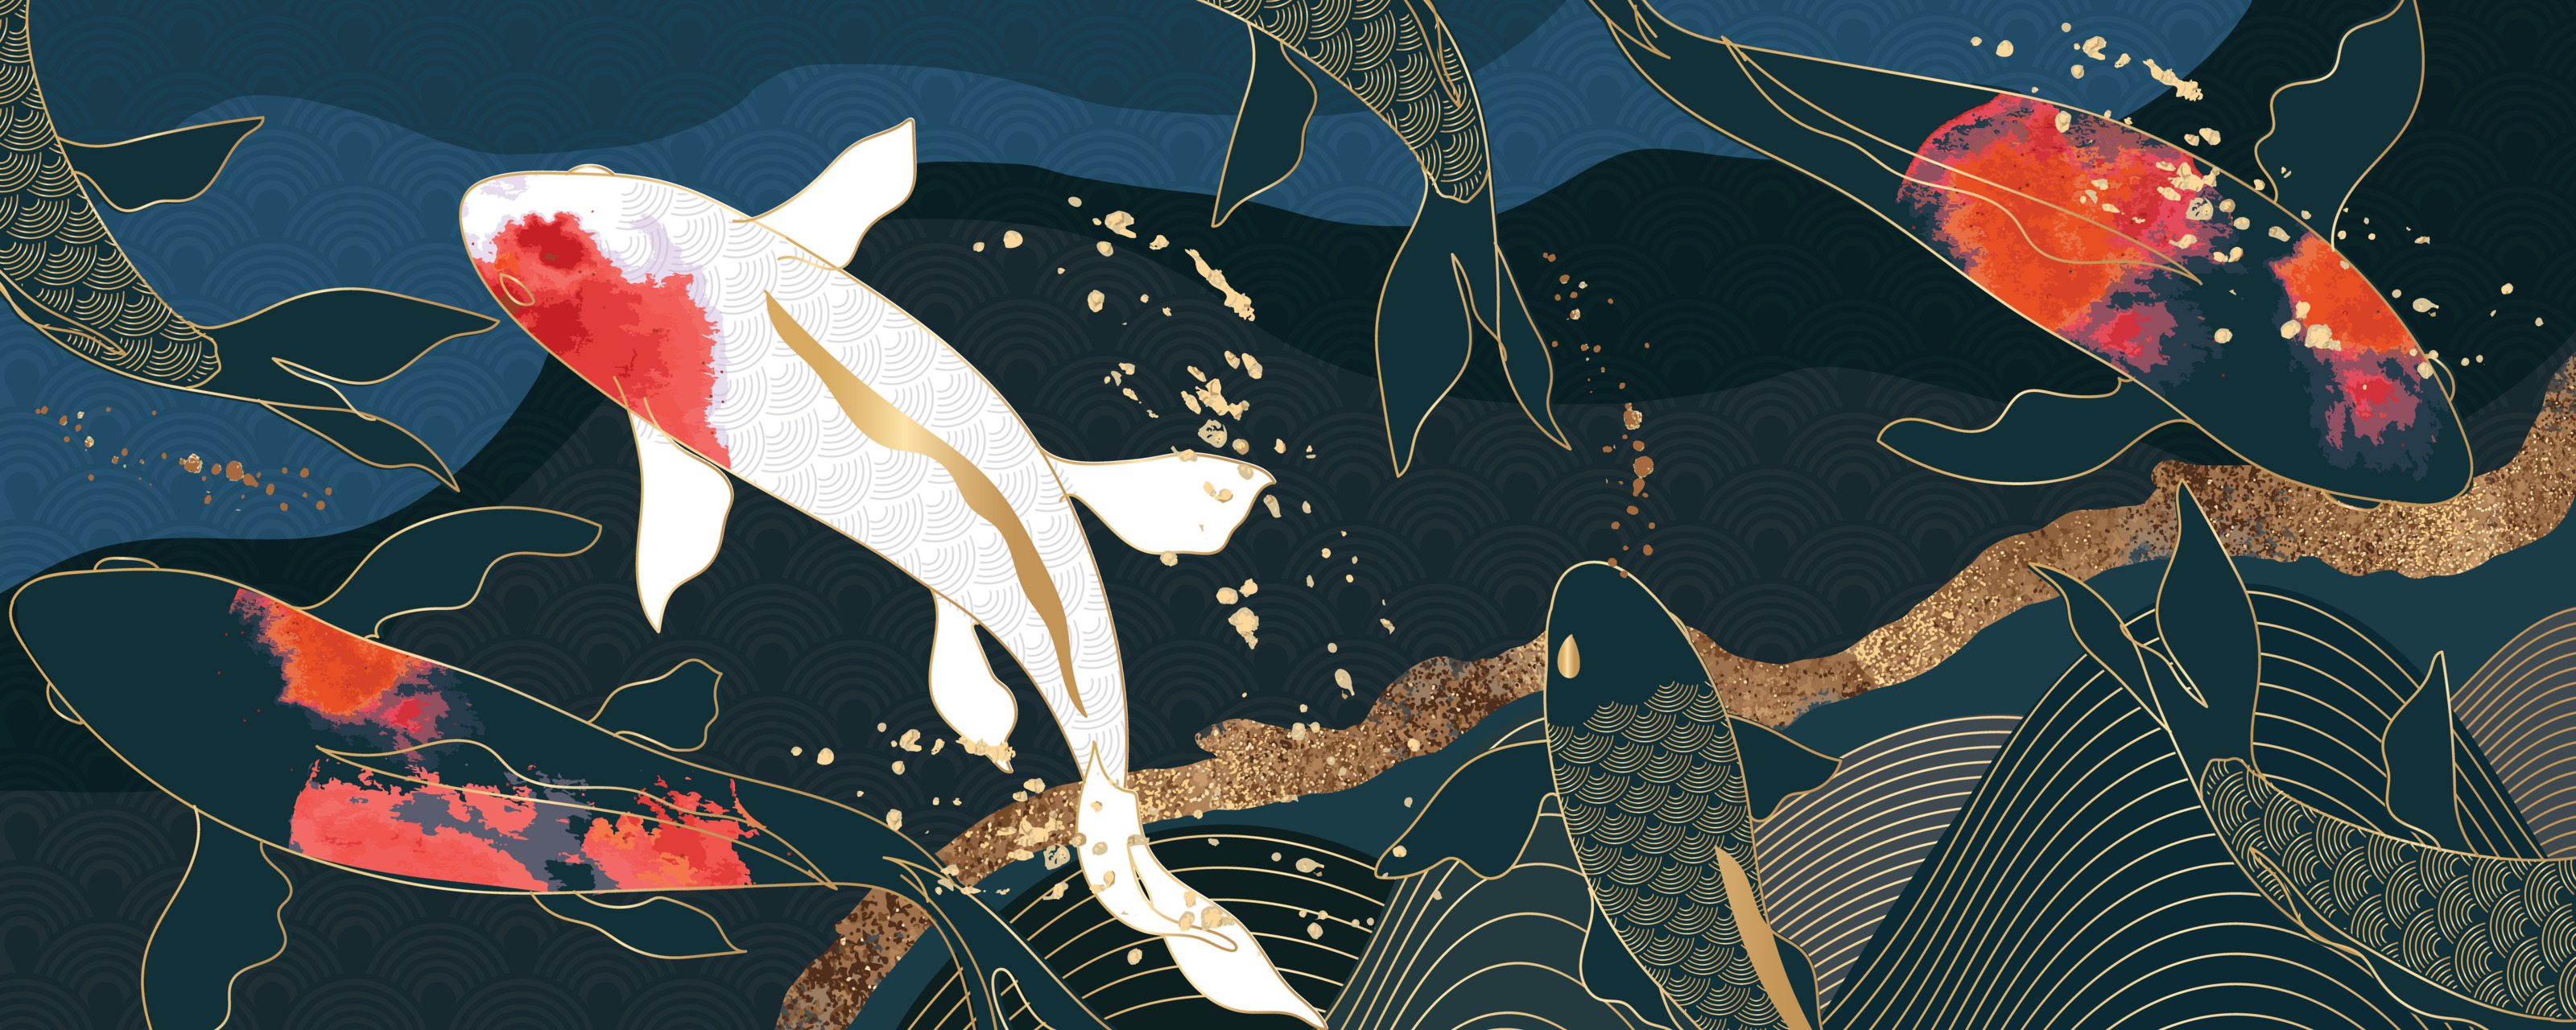 Abstrakte Grafik mit gezeichneten Koi Fischen mit Wellen in den Farben Weiß, Schwarz, Blau, Rot und Gold